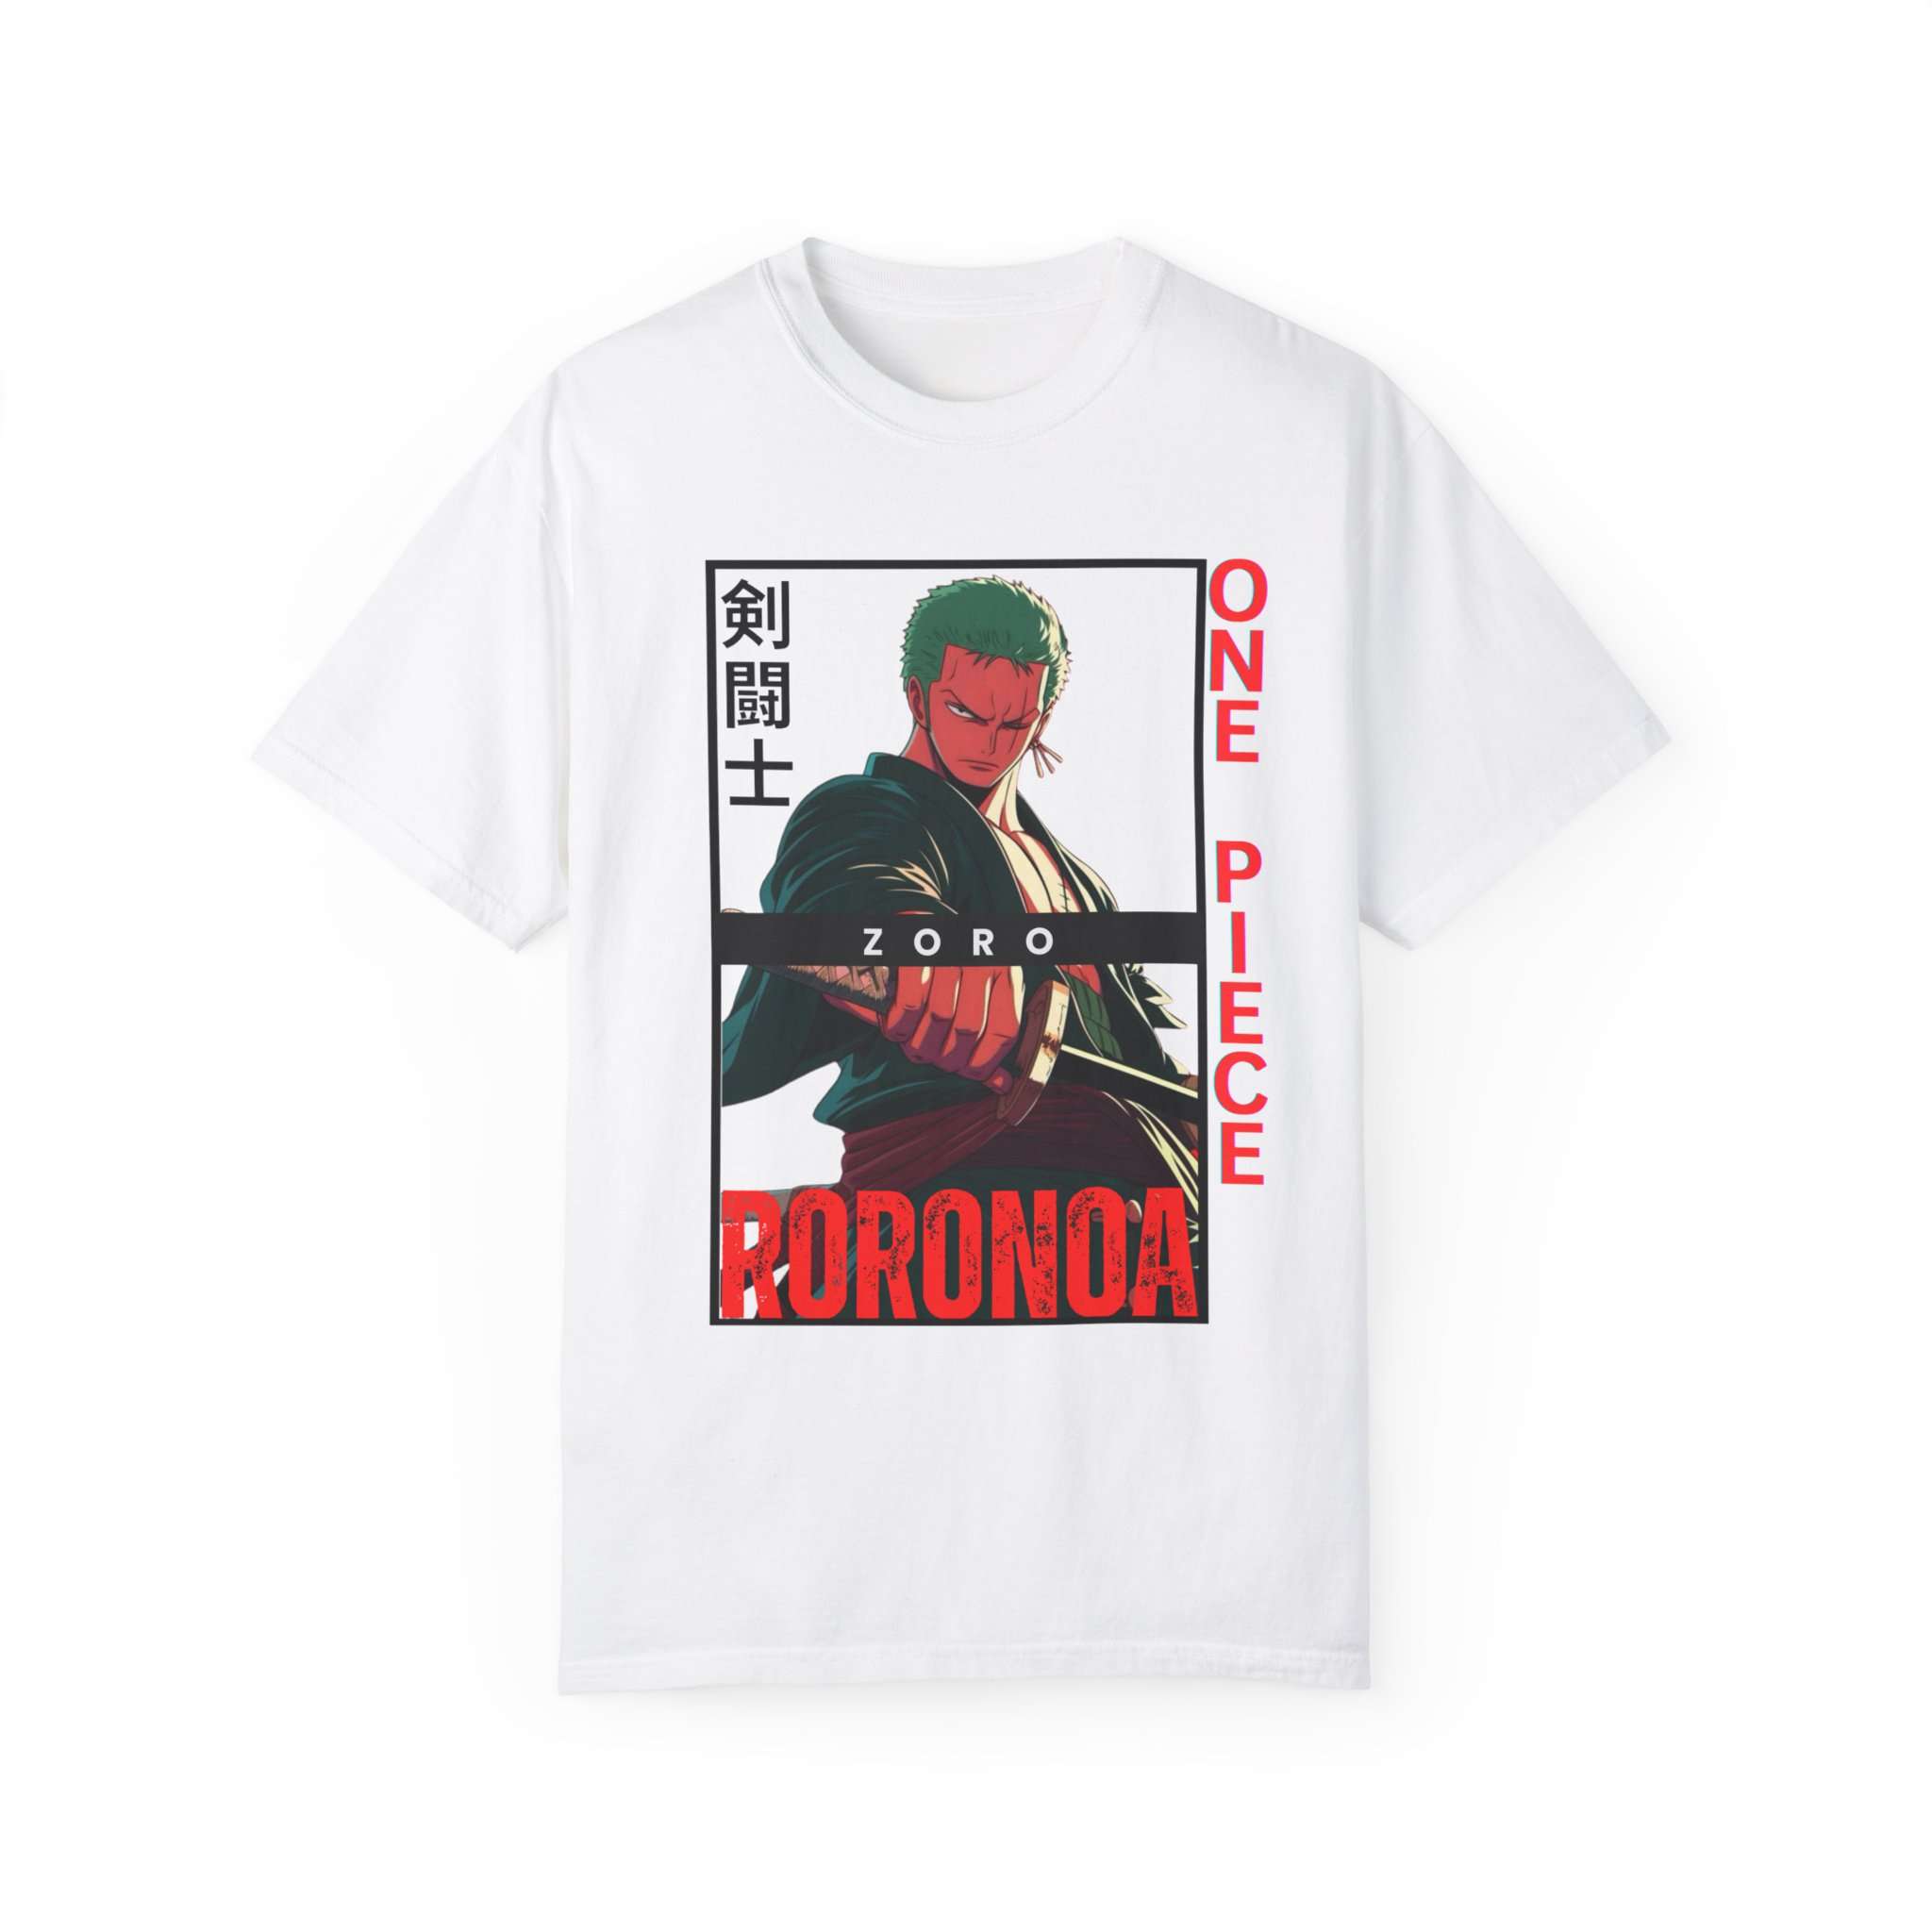 Roronoa Zoro Premium Unisex Garment-Dyed T-Shirt